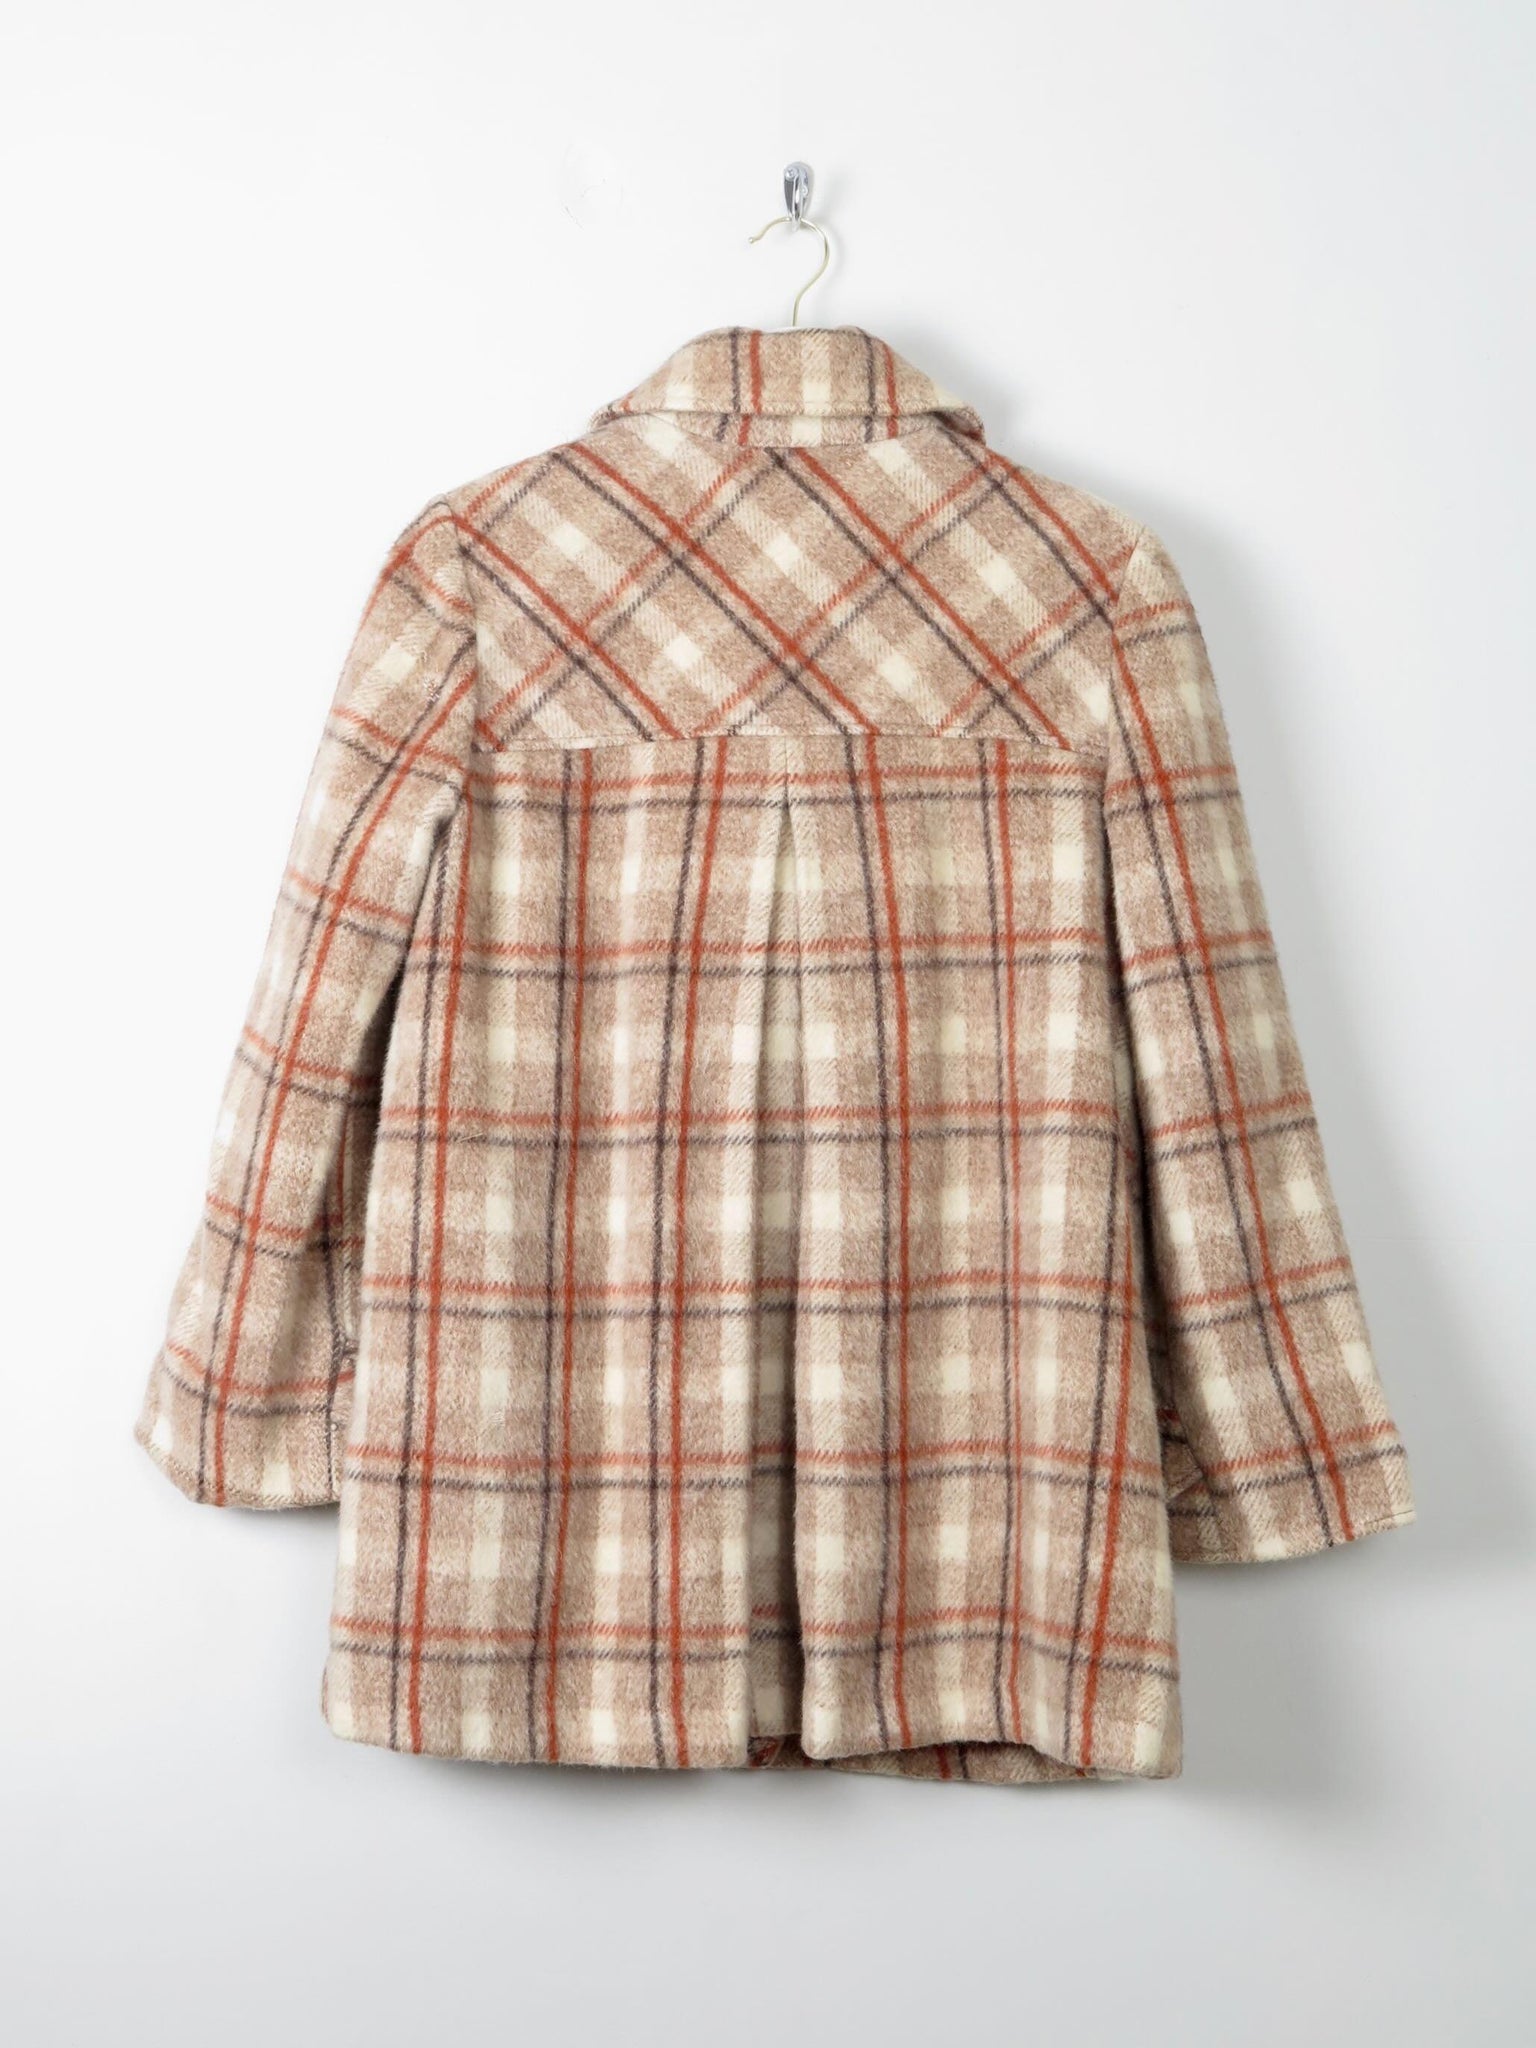 Women's Tweed Vintage  Short Coat S/M - The Harlequin